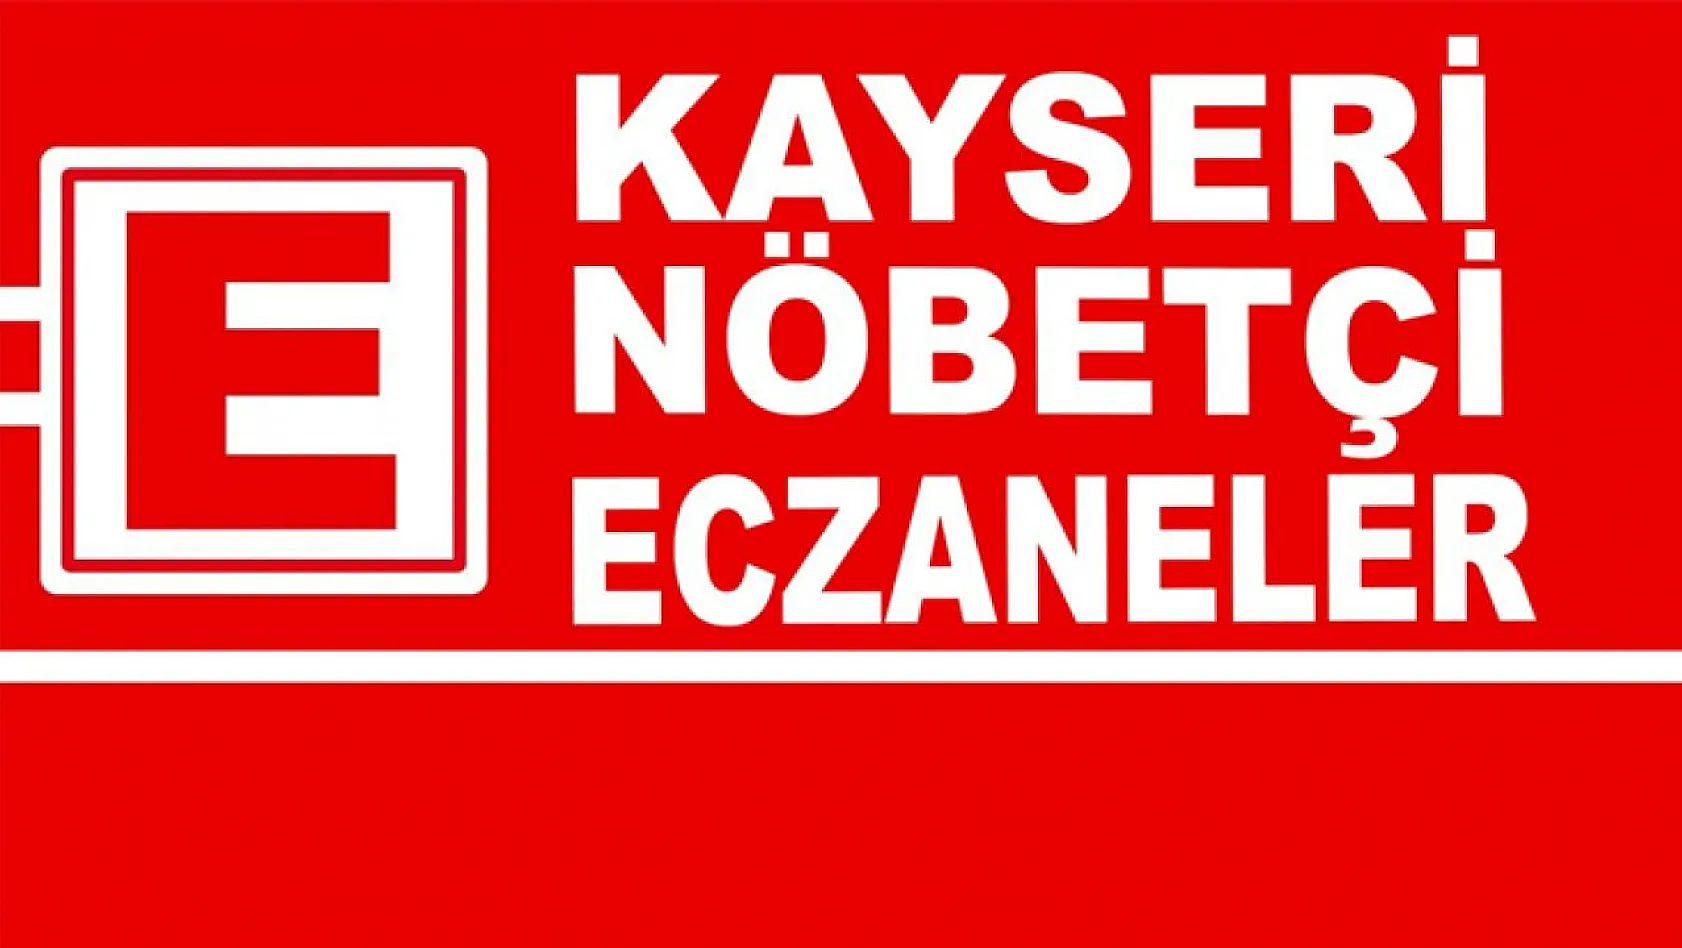 Kayseri'de Nöbetçi Eczaneler! 2 Mayıs Salı